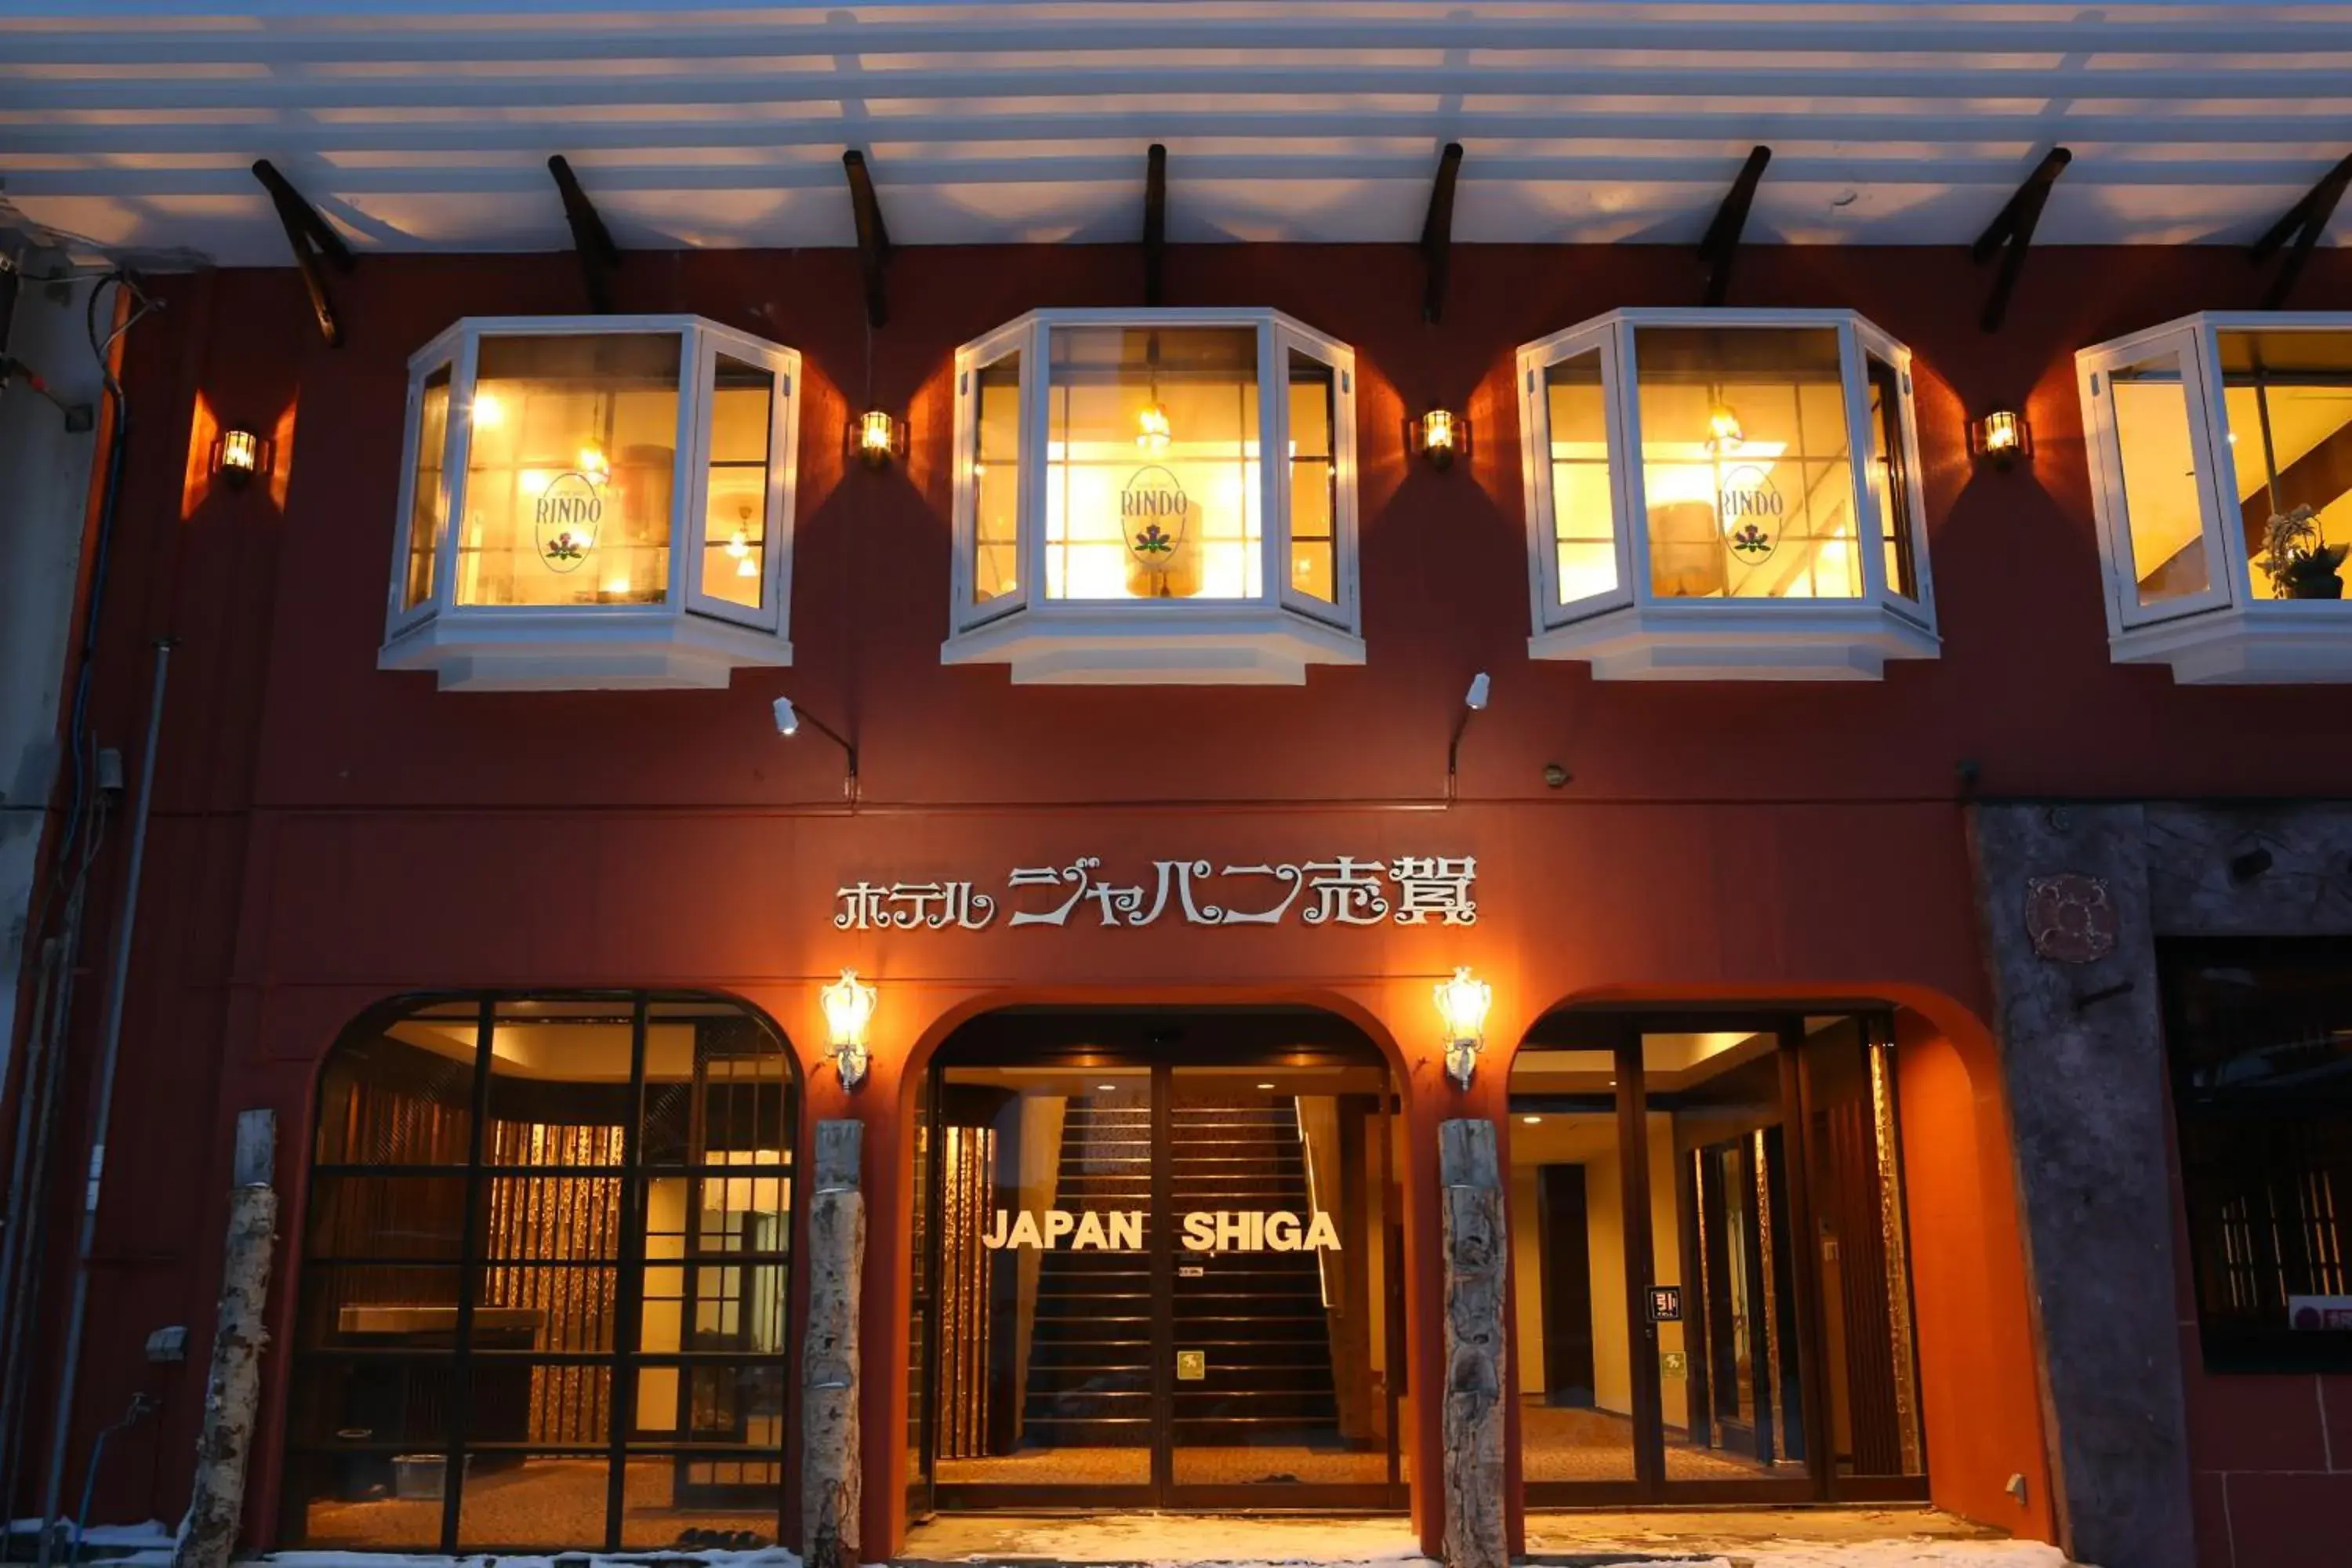 Facade/entrance in Hotel Japan Shiga